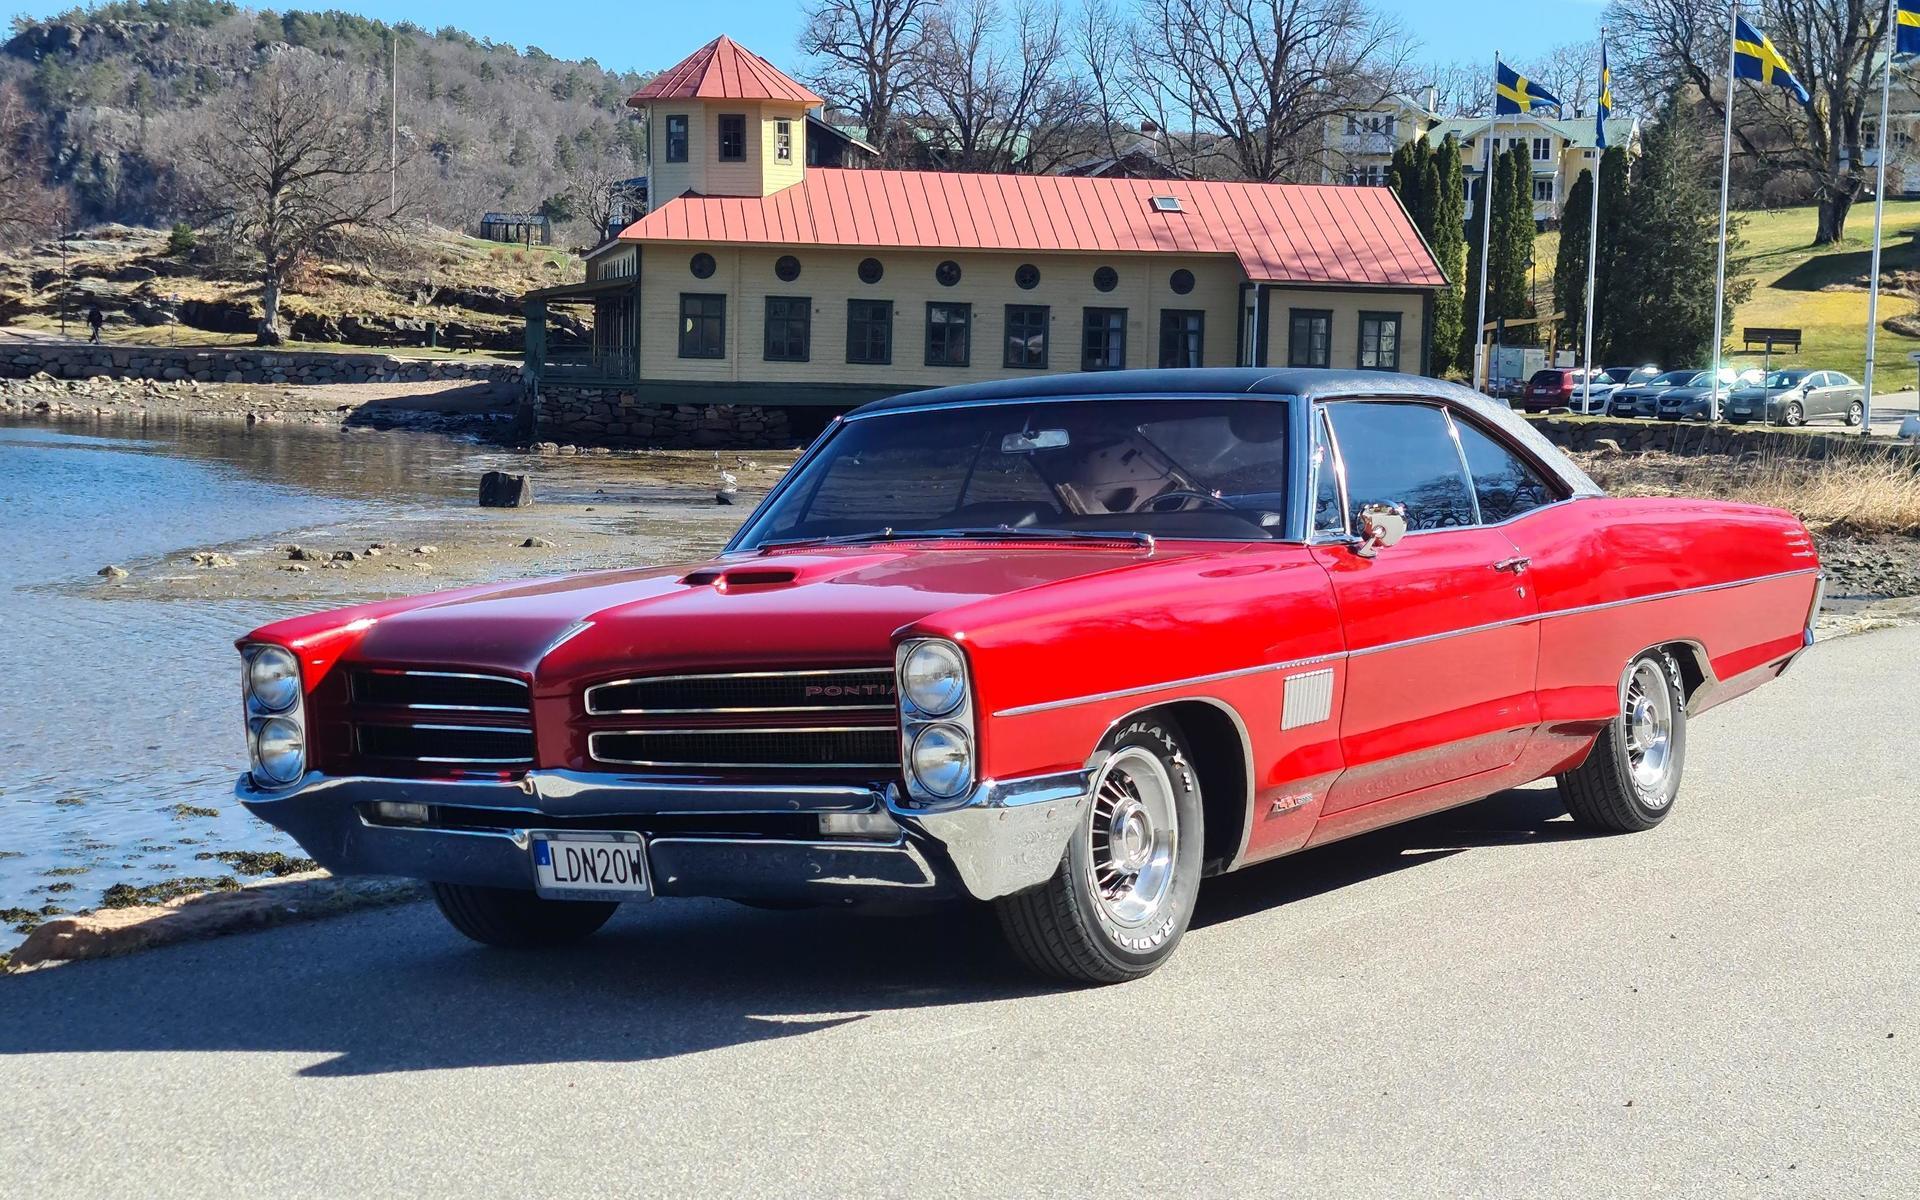 ”Pontiac bonneville 1966: Bilen hittades på en bilskrot i Utah USA och skeppades hit för 5 år sedan. Har renoverat den på lediga stunder och hela Bilen har varit isärplockad men nu är den i toppskick.”